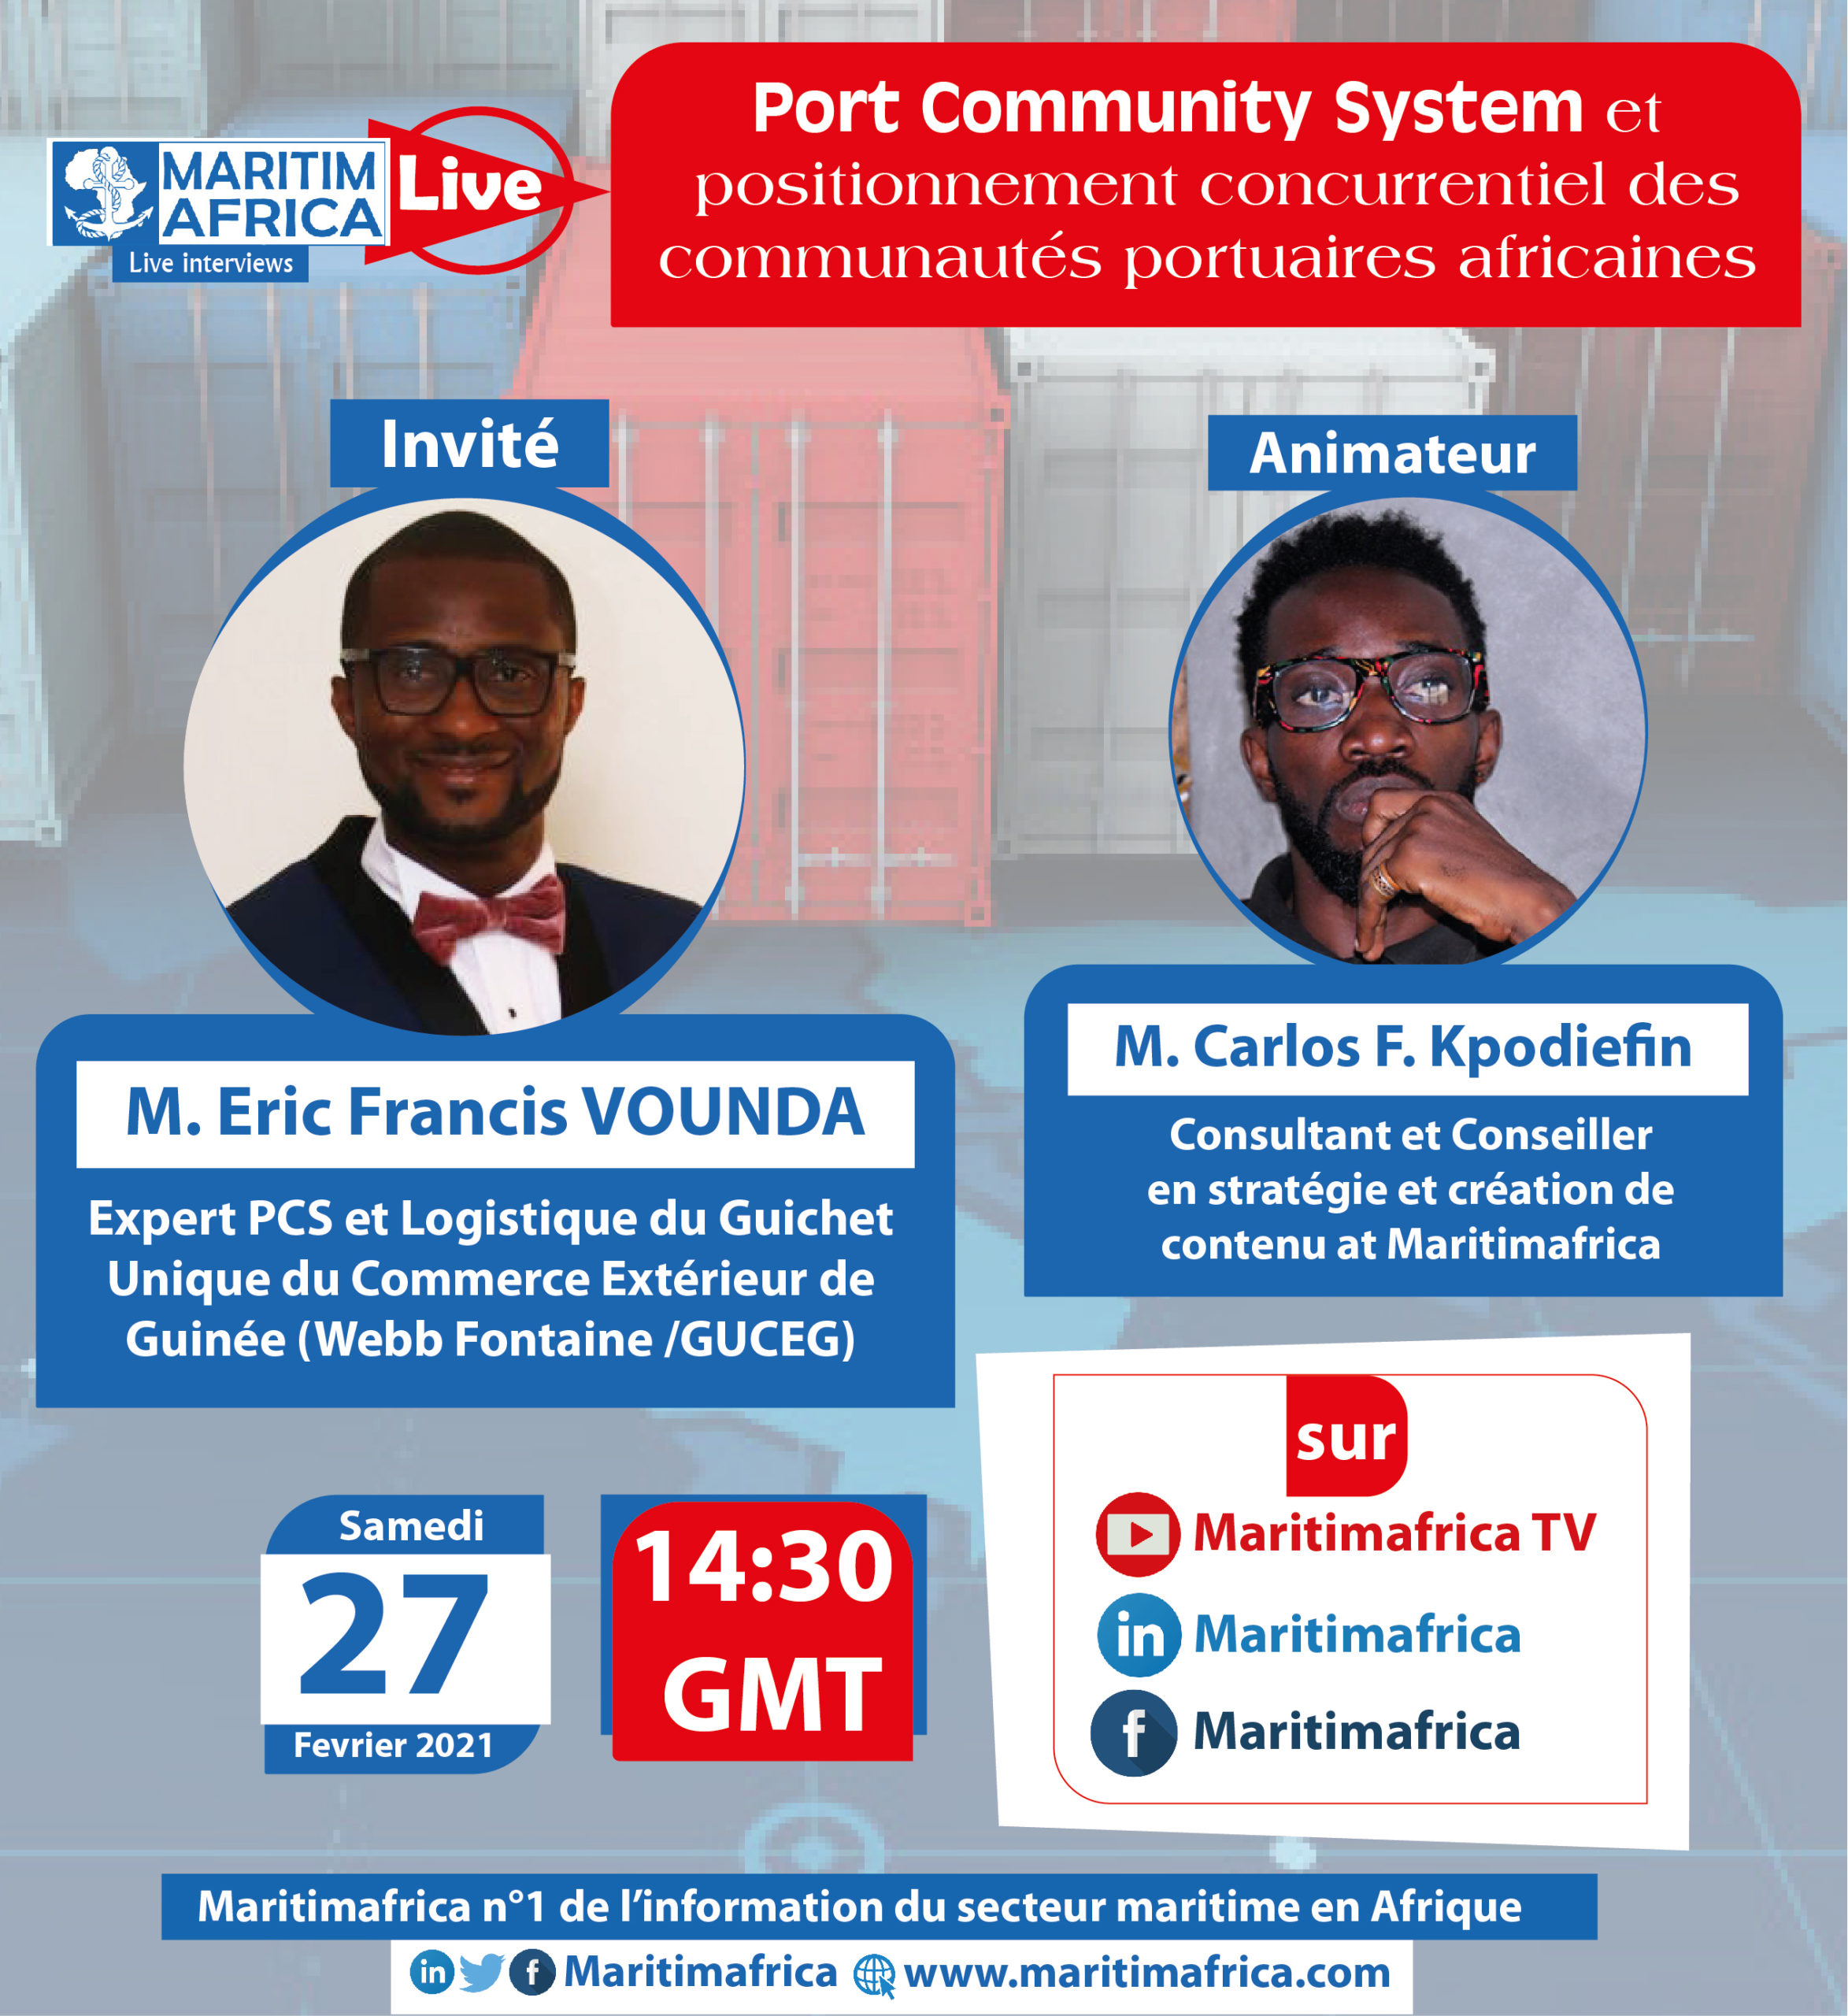 Maritimafrica Live : « Port Community System et positionnement concurrentiel des communautés portuaires africaines »